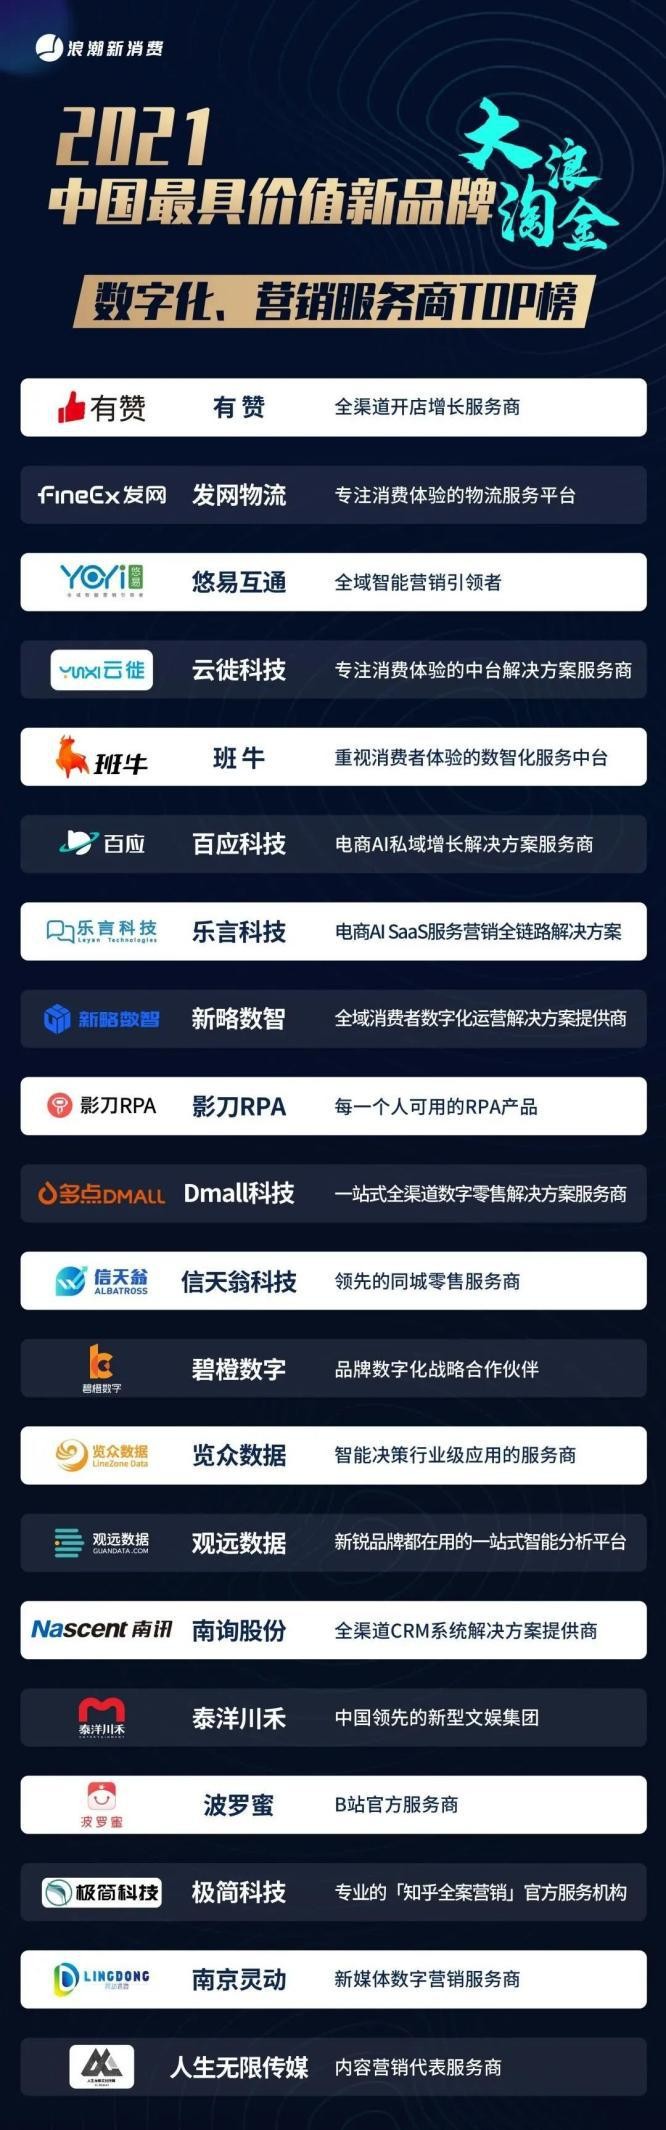 碧橙数字入选浪潮新消费《中国最具价值新品牌·数字化、营销服务商TOP榜》